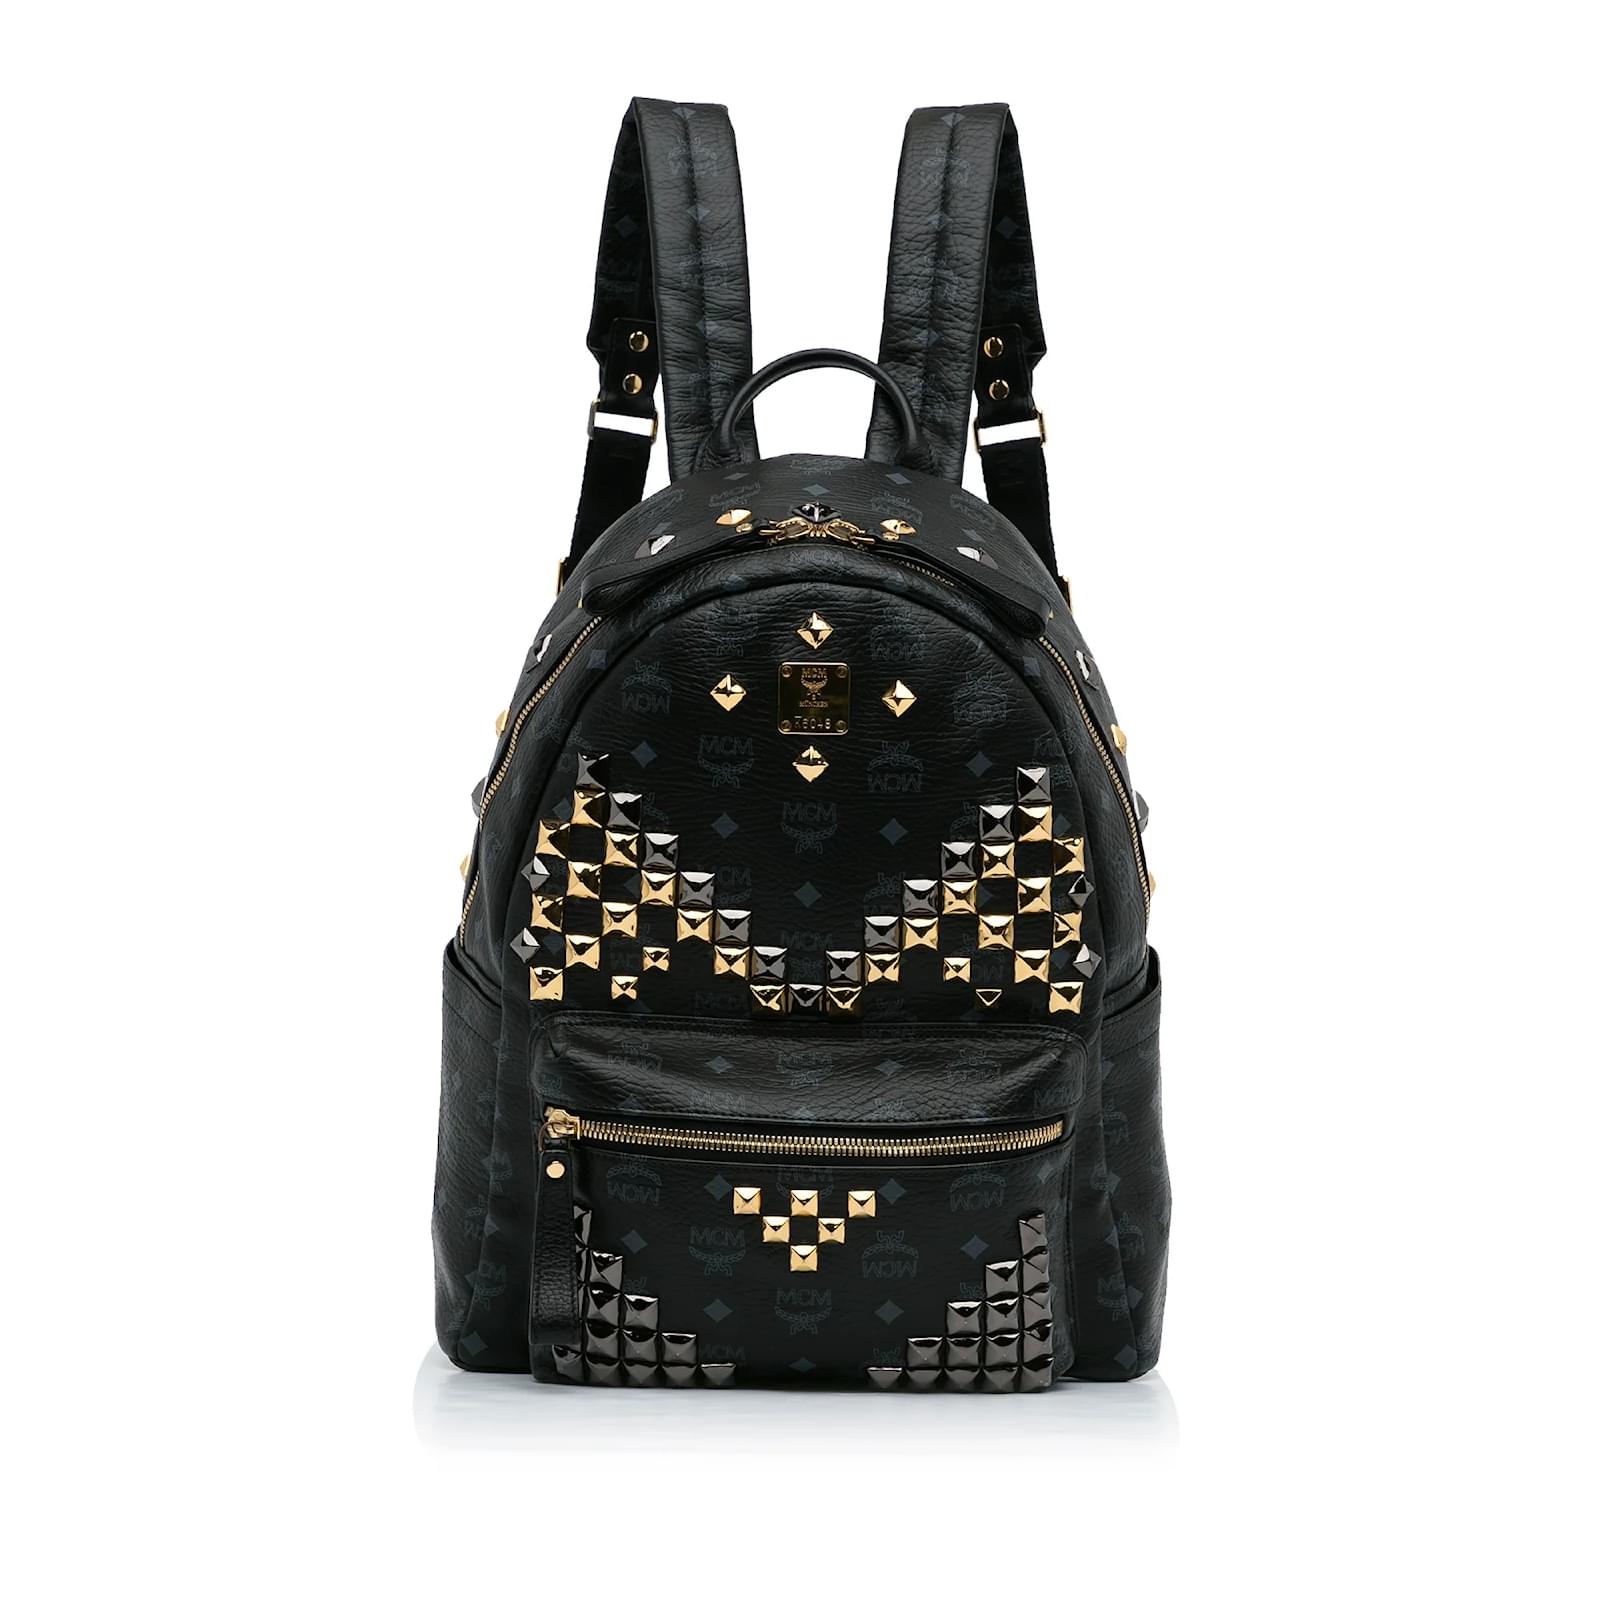 HEATWAVE Women's Studded Backpack (Beige) : Amazon.in: Fashion